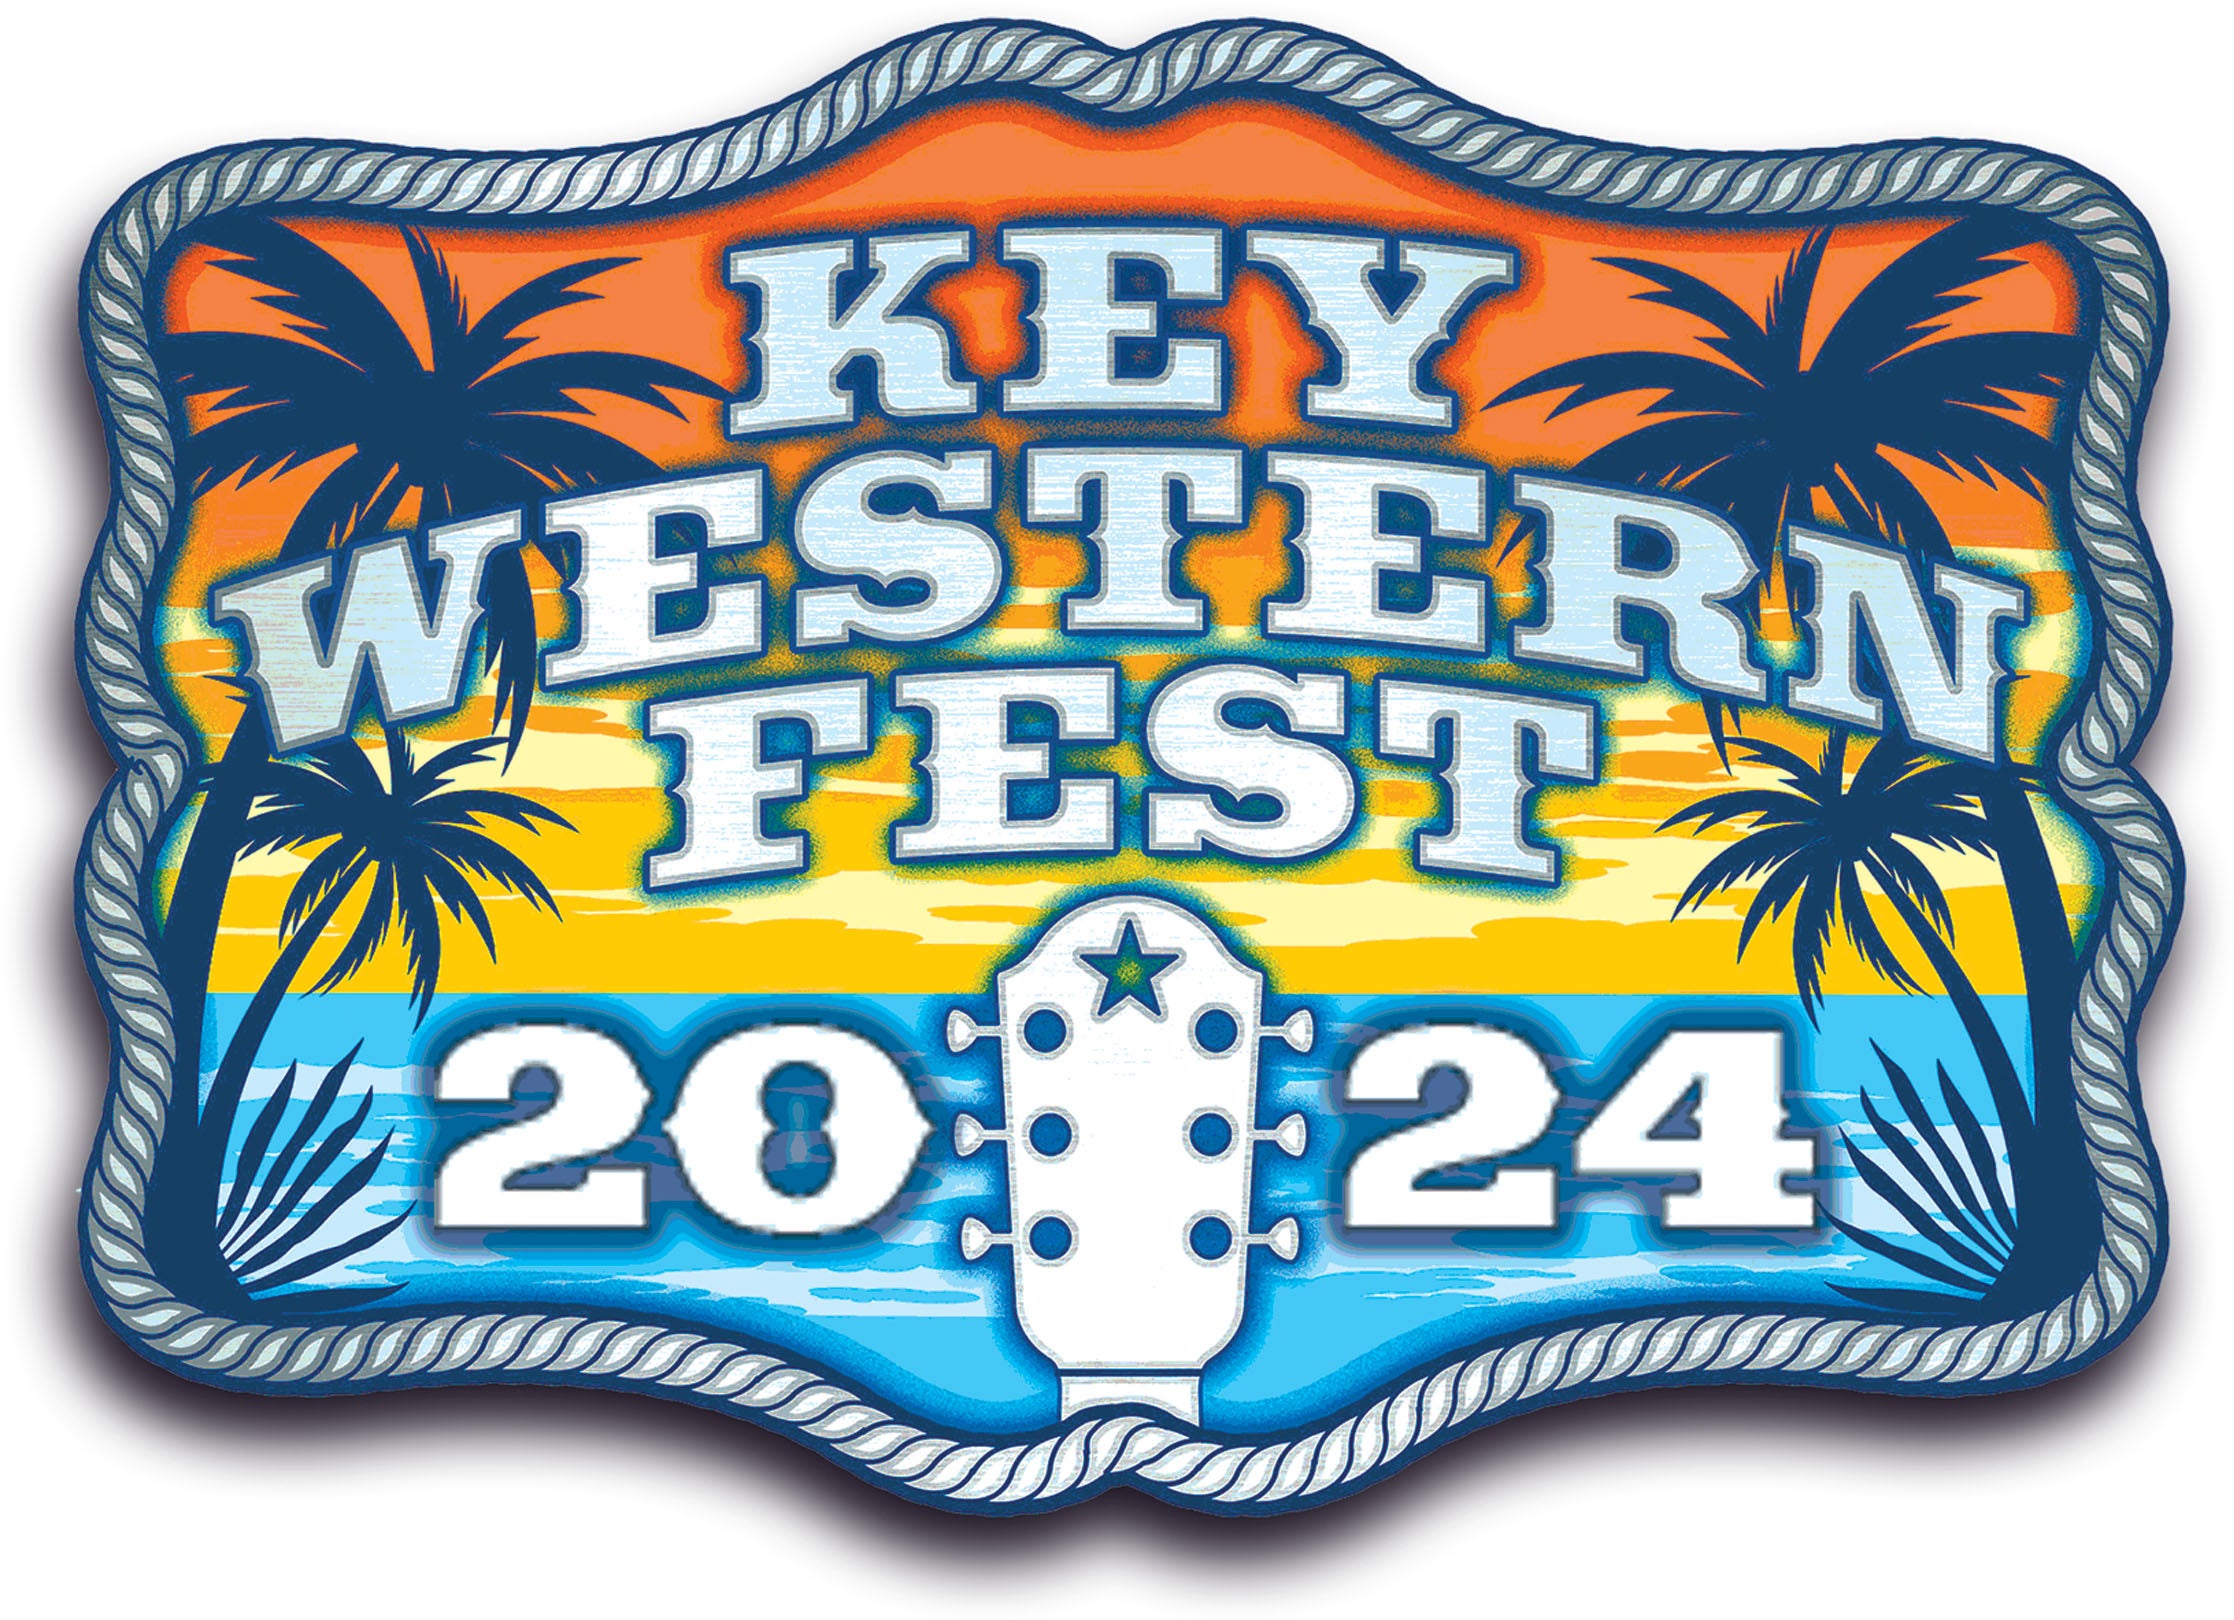 Key Western Fest